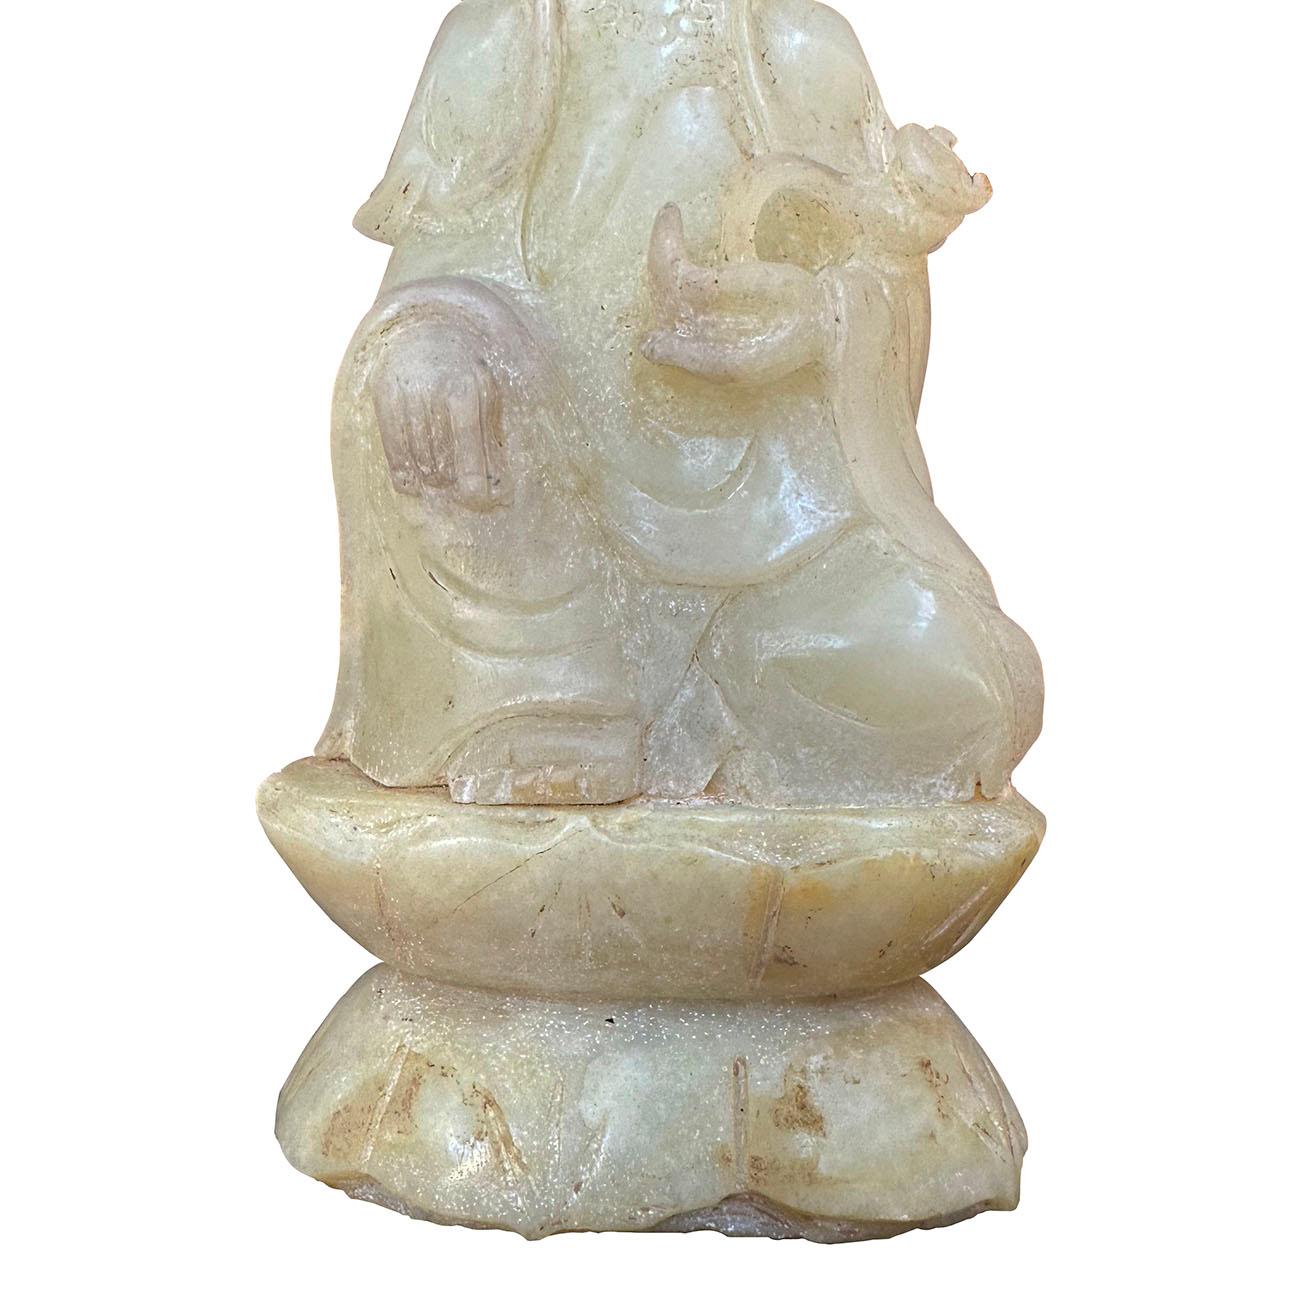 Chinese Export 20th Century Chinese Jade Carved Kwan Yin Bodhisattva statuary